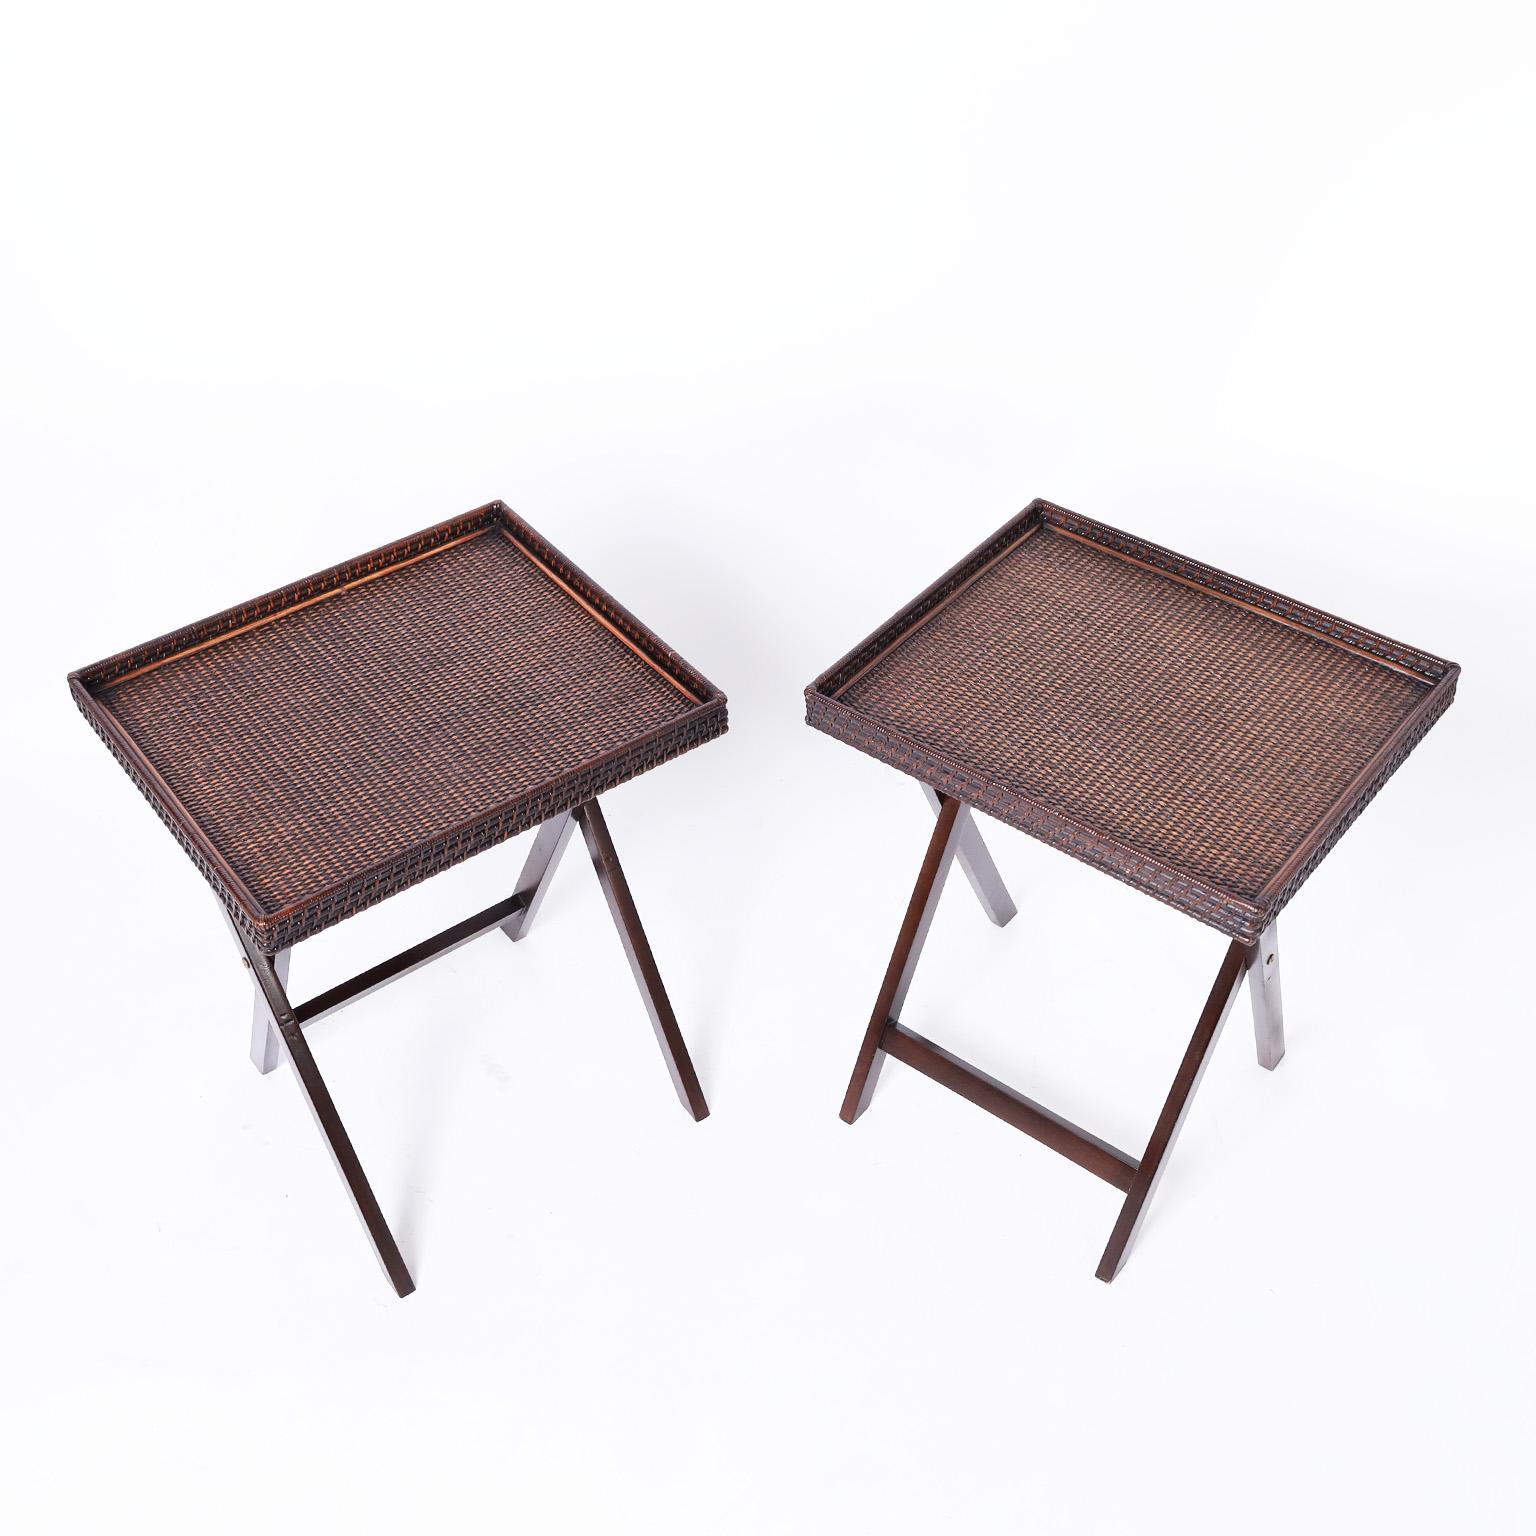 Vintage Paar klappbare Tablett- oder Serviertische mit geflochtenen Rattanplatten, die mit Galerien auf klappbaren X-Stil Basen ehrgeizig gefertigt wurden.